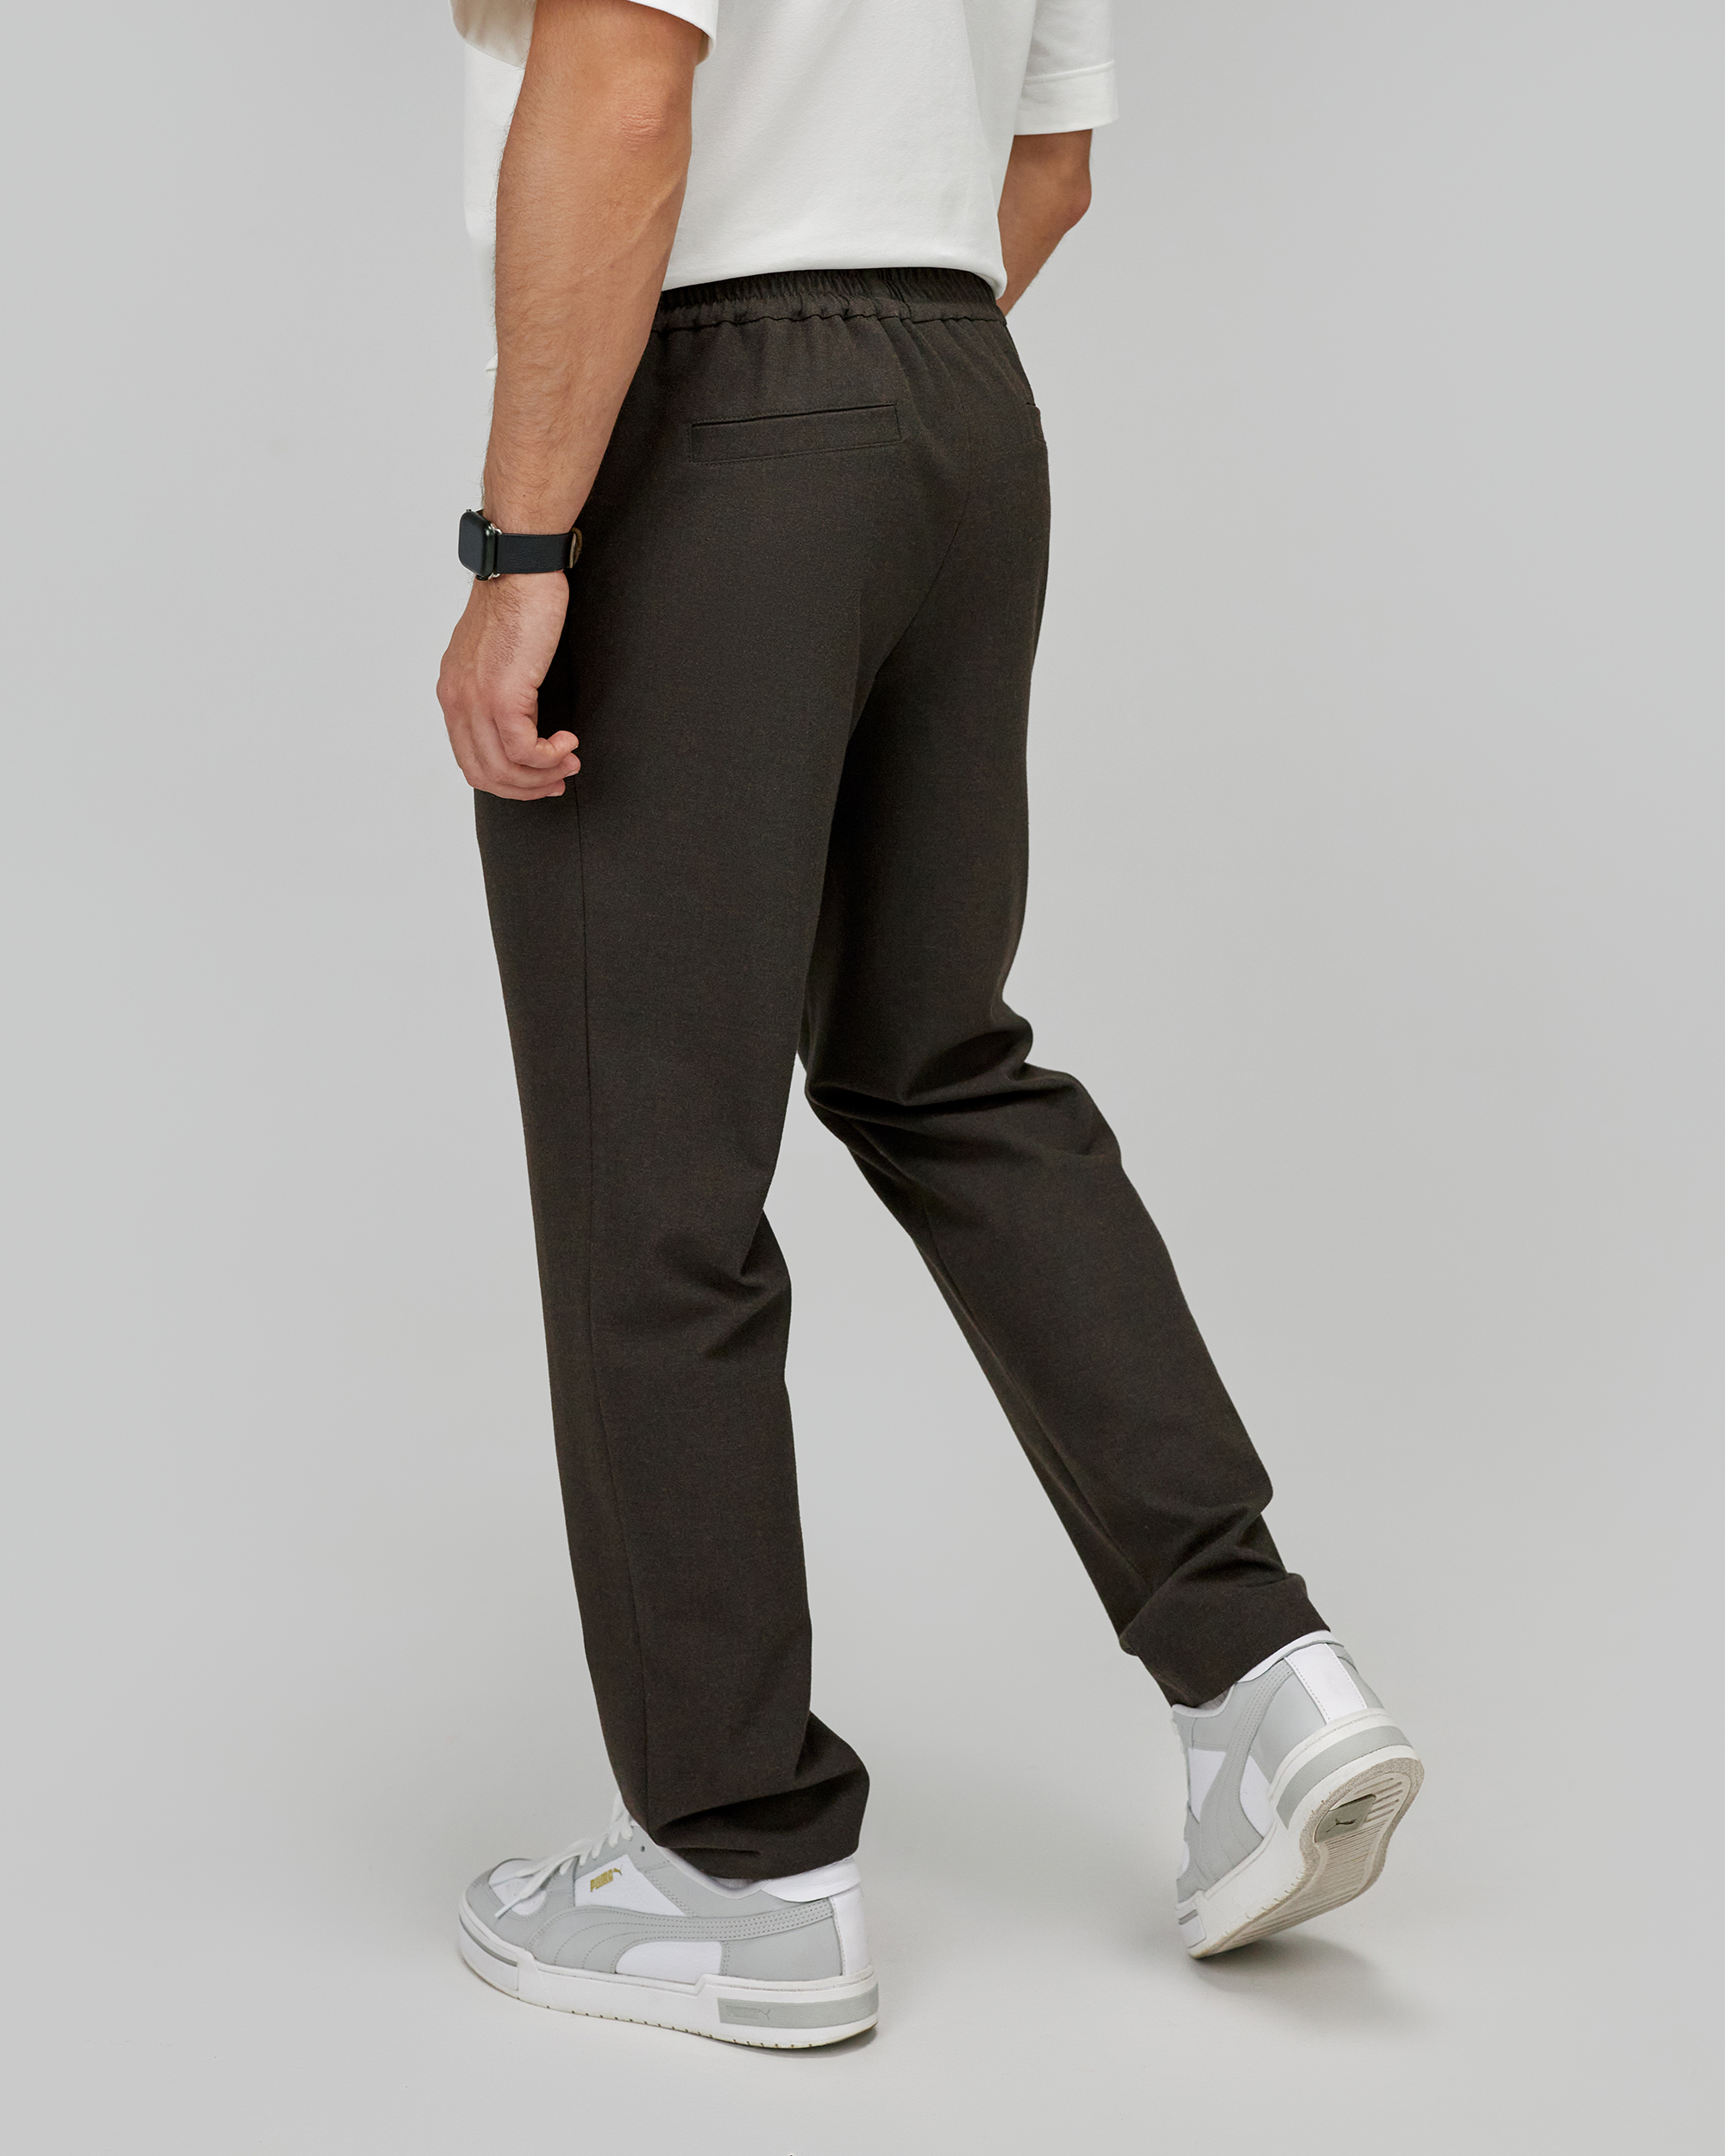 Мужские брюки, выкройка Grasser №915 – купить онлайн на сайте GRASSER,каталог выкроек с ценами